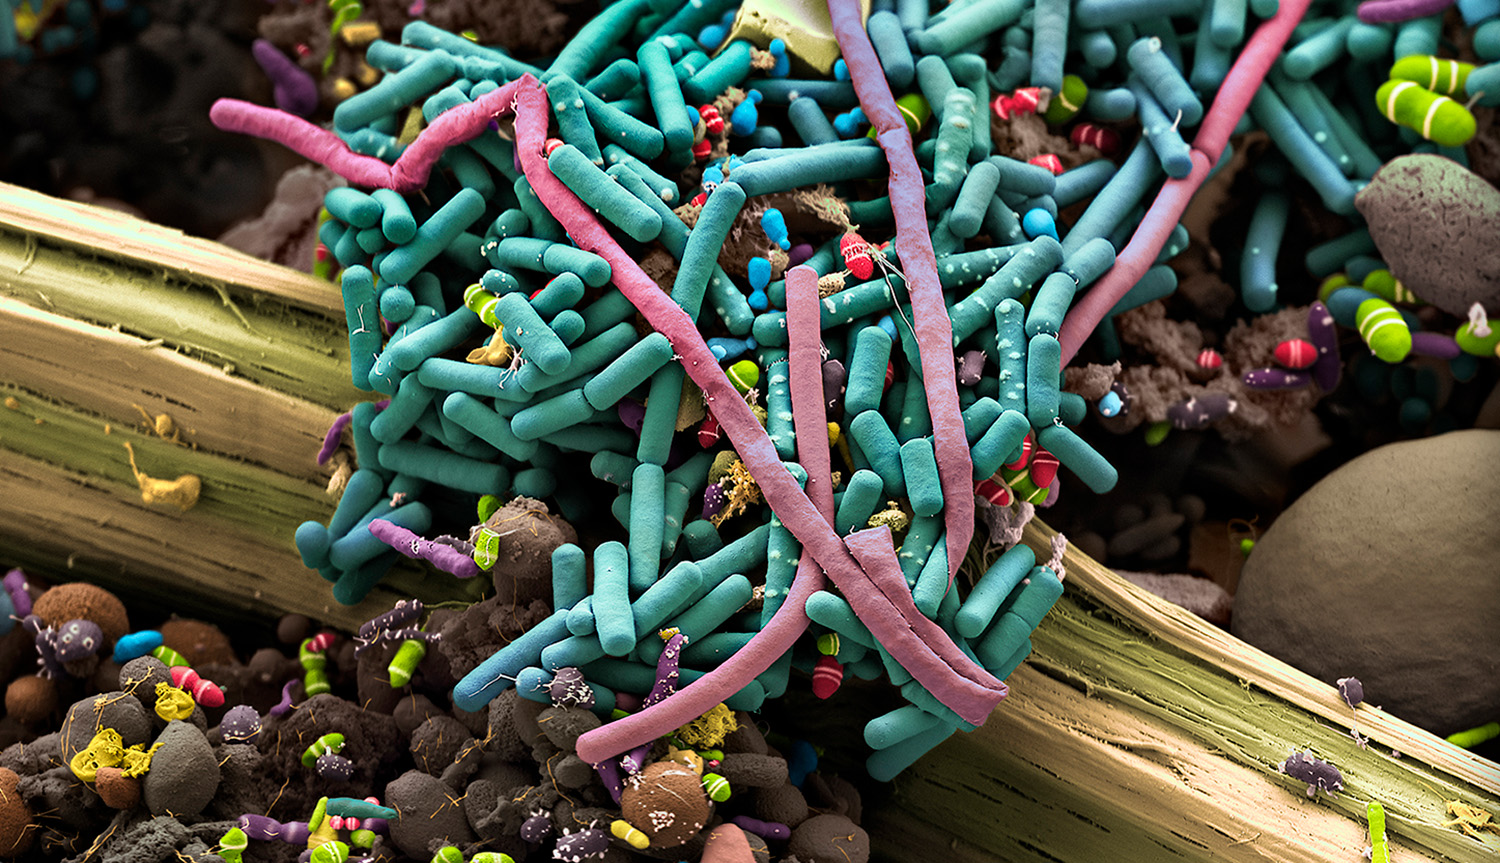 Una imagen colorizada de un excremento obtenida con un microscopio electrónico de barrido muestra un trozo de fibra vegetal de color verde pálido cubierto por diminutos microbios de colores verde azulado, púrpura, rojo, verde y marrón, entre otros.